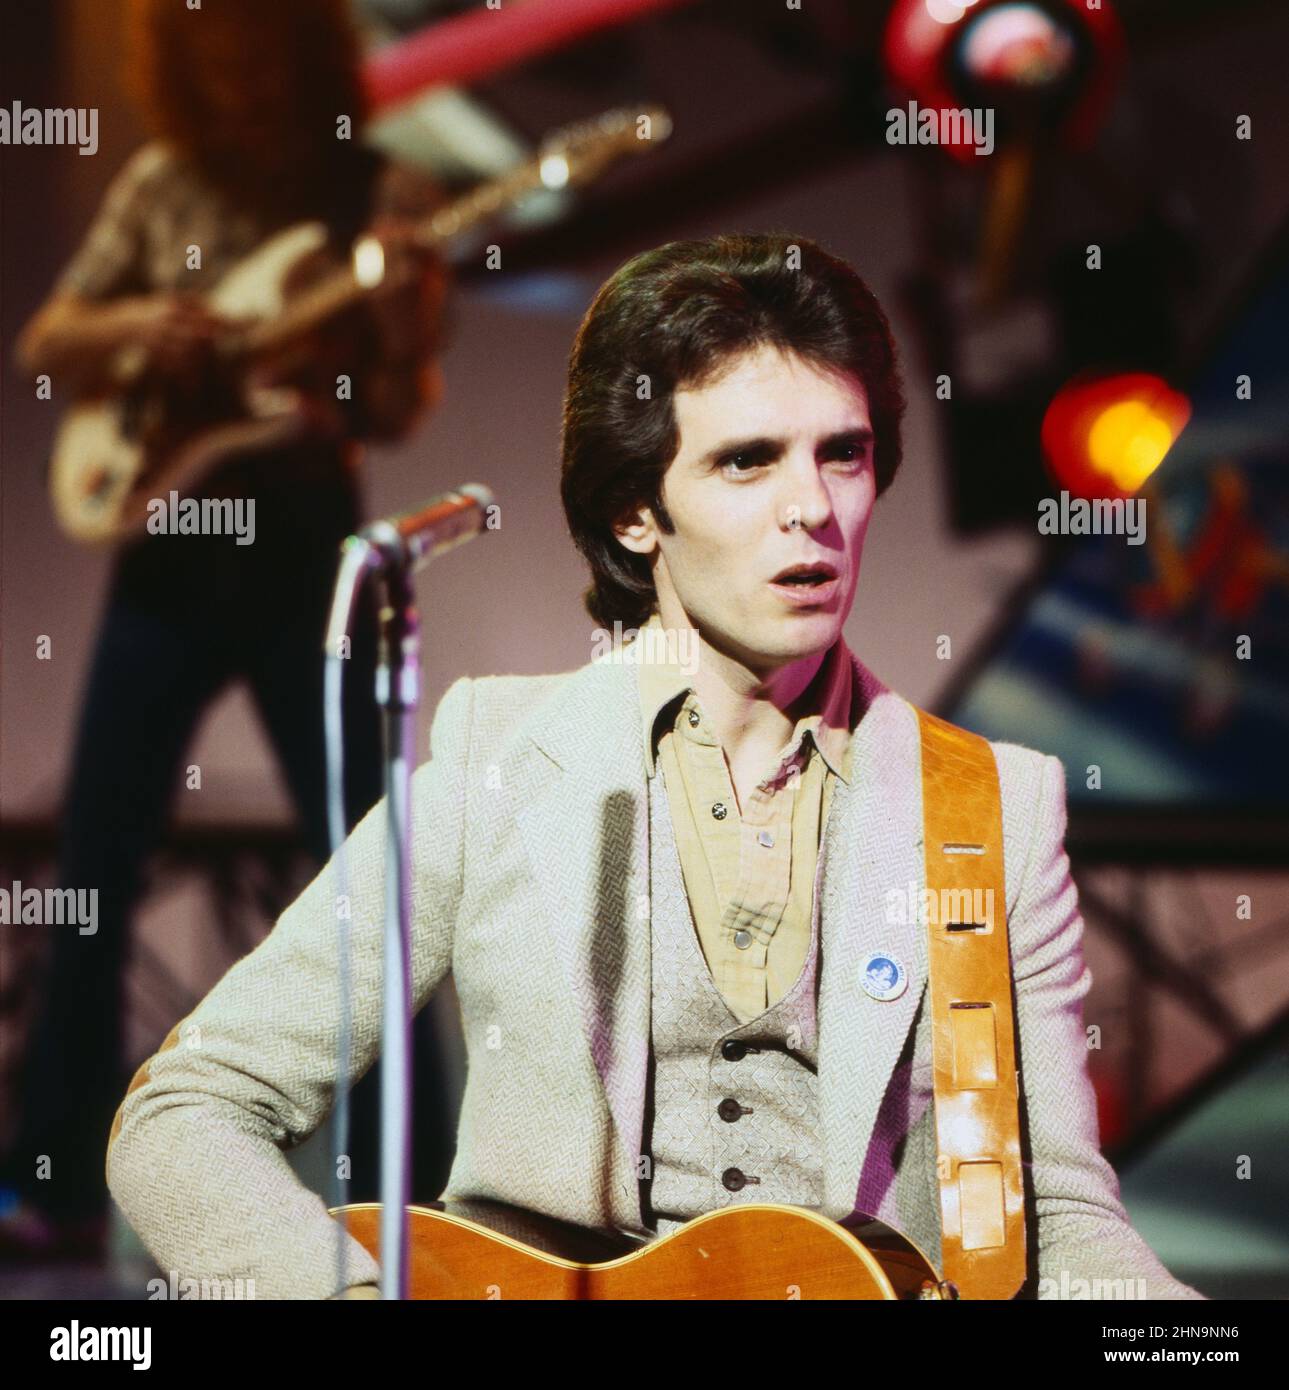 Iain Matthews, britischer Folk-Sänger und Gitarrist, 1970. Iain Matthews, British Folk singer and guitarist, 1970. Stock Photo